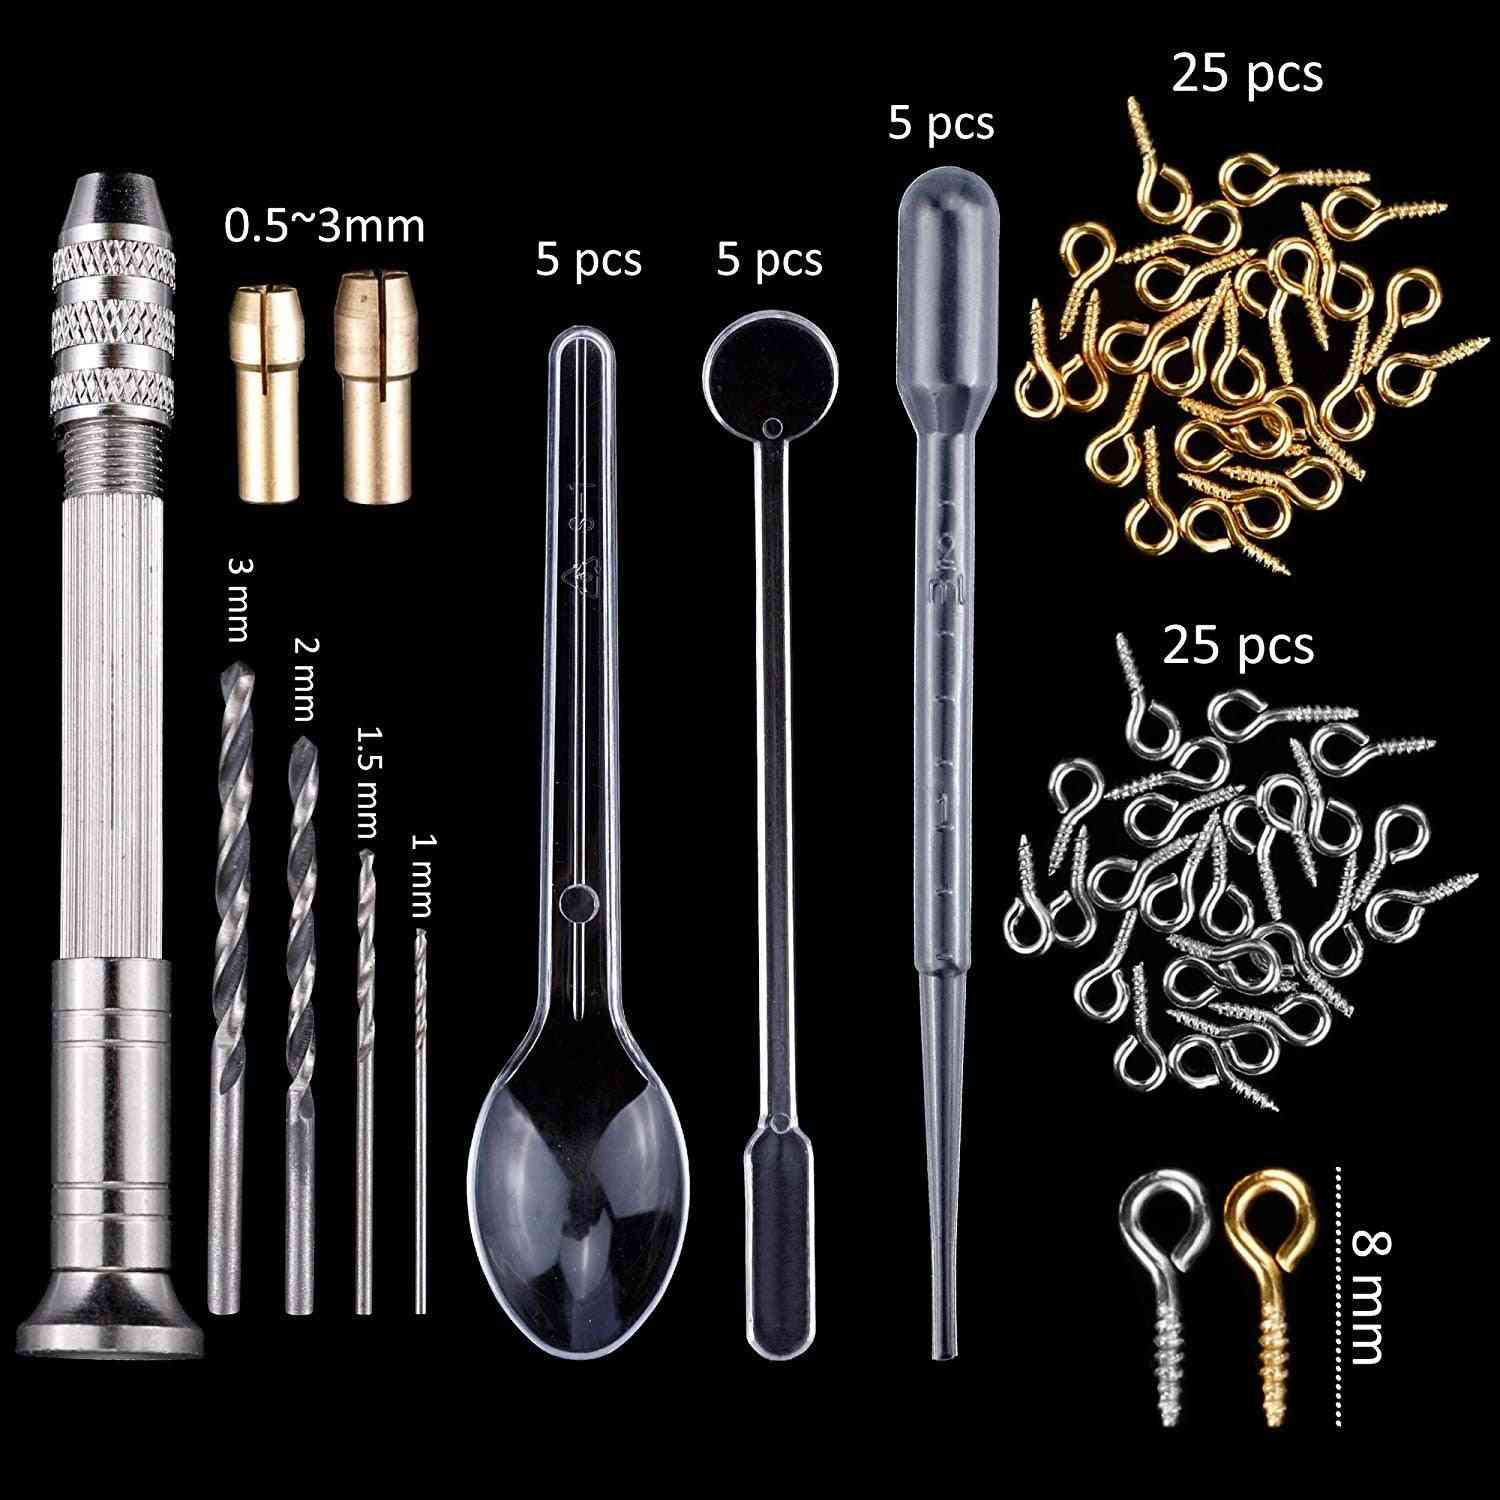 Moldes y herramientas de fundición de silicona con una bolsa de almacenamiento negra para hacer manualidades de joyería